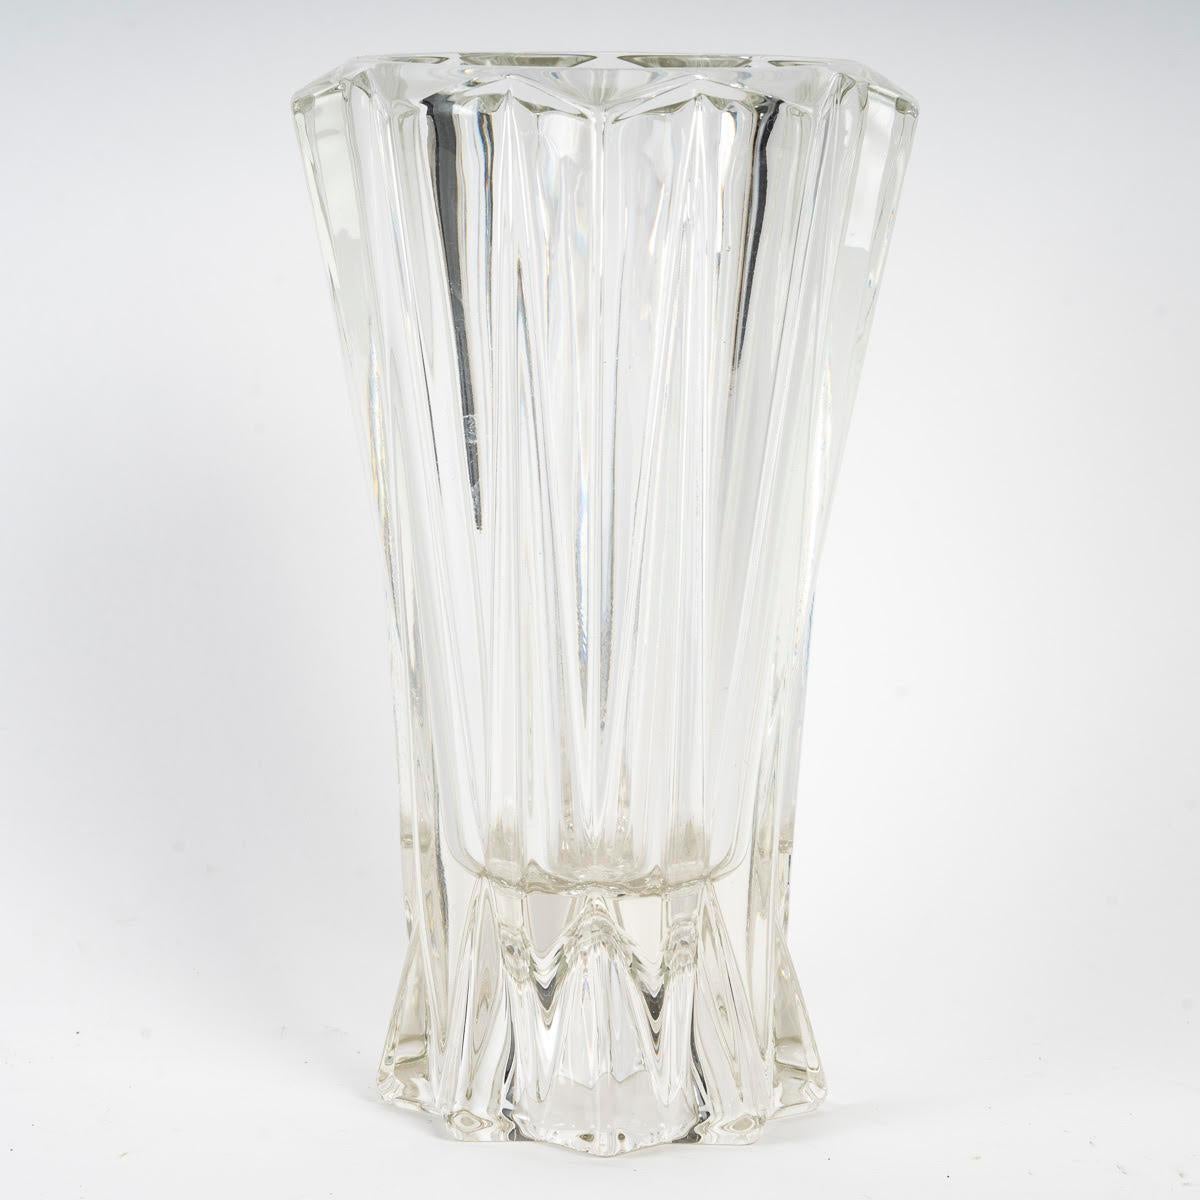 Vase en verre moulé des années 1950.

Vase en verre moulé des années 1950.
h : 22cm, d : 13cm